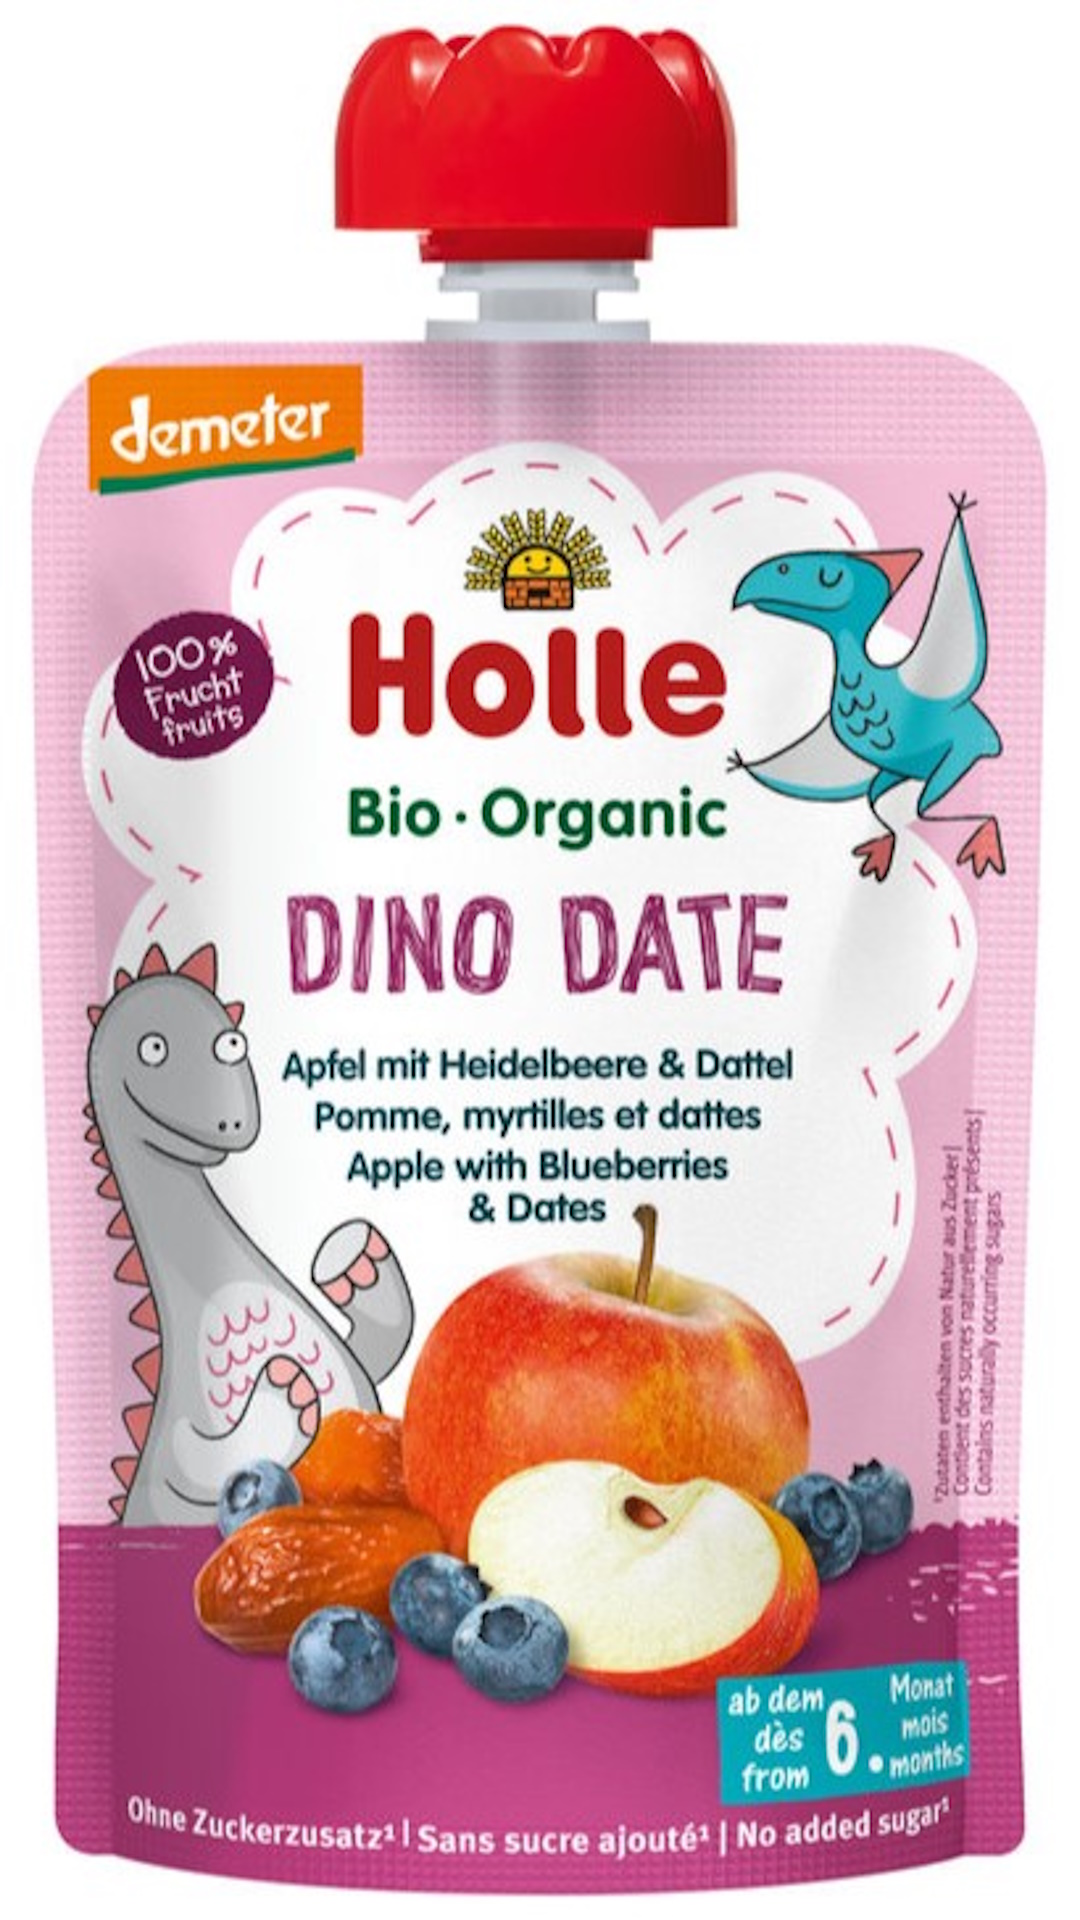 Dino Date-Naturhaus Nördlingen